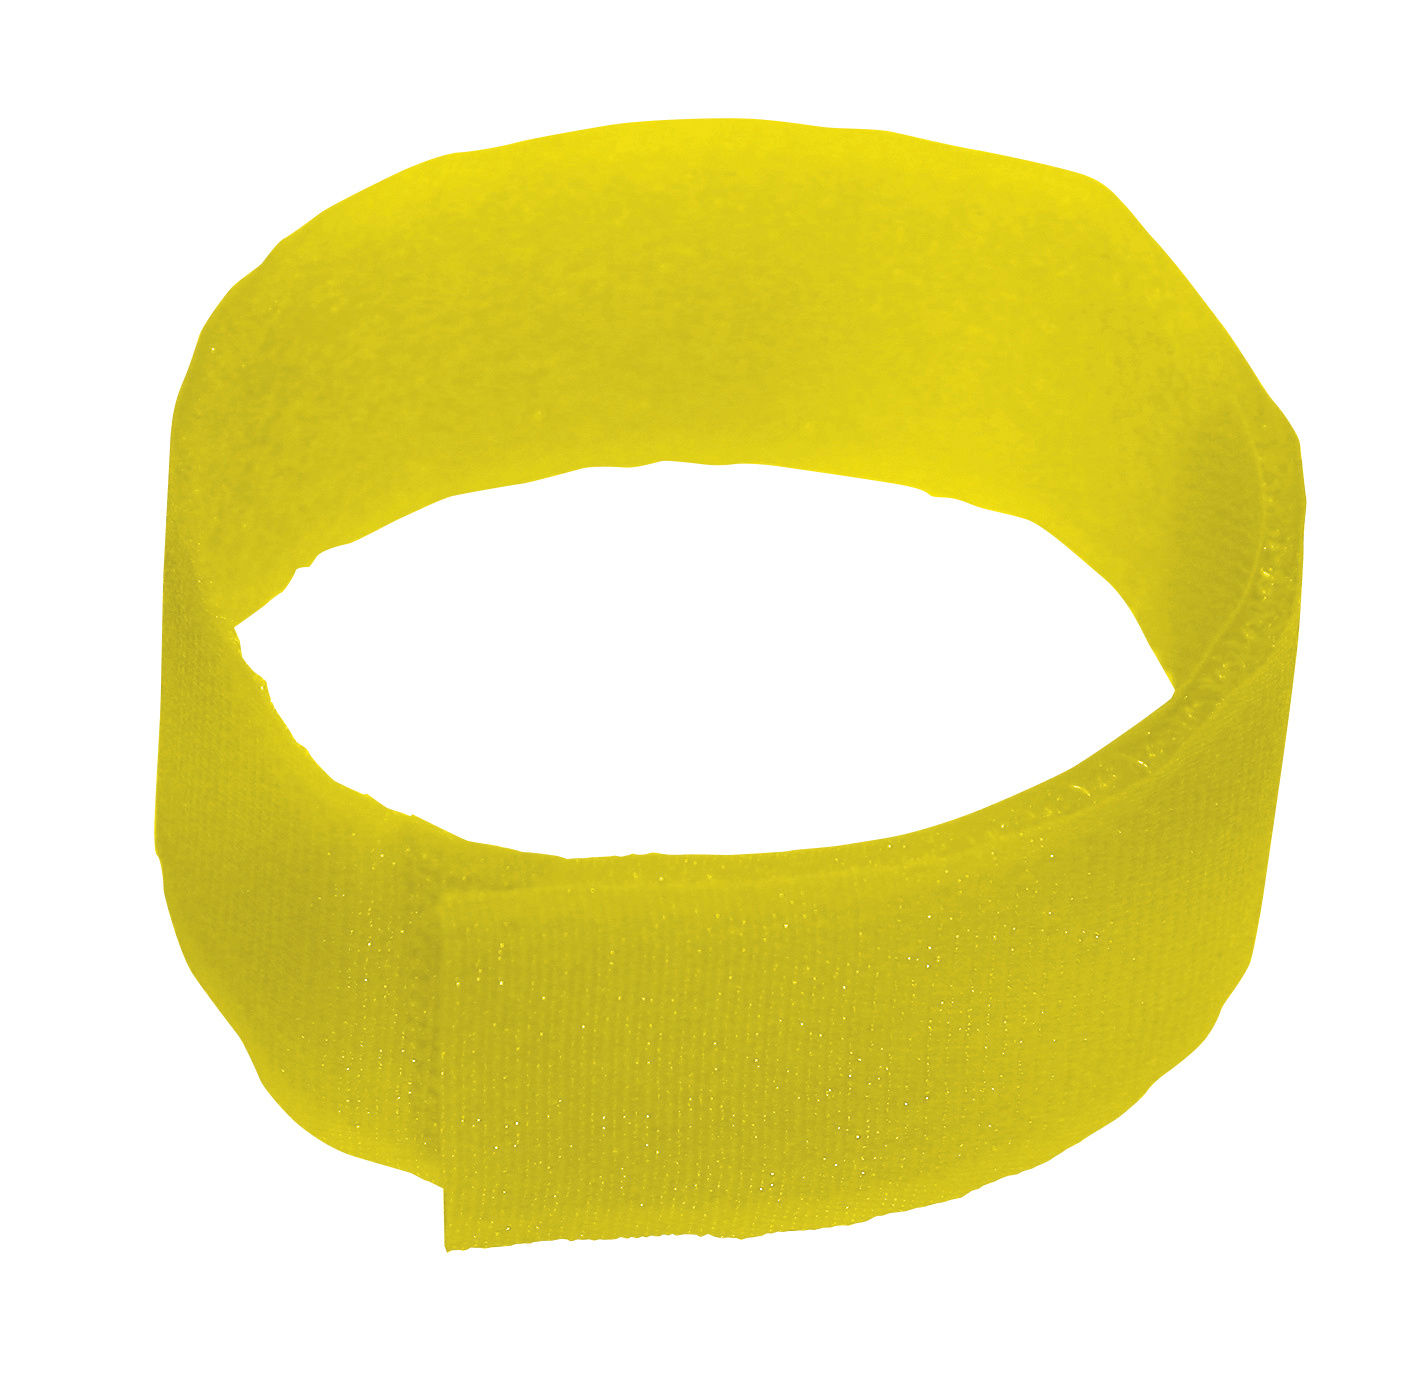 Fesselmarkierungsband -gelb-, 36 cm, Klettverschluss (10 St.)